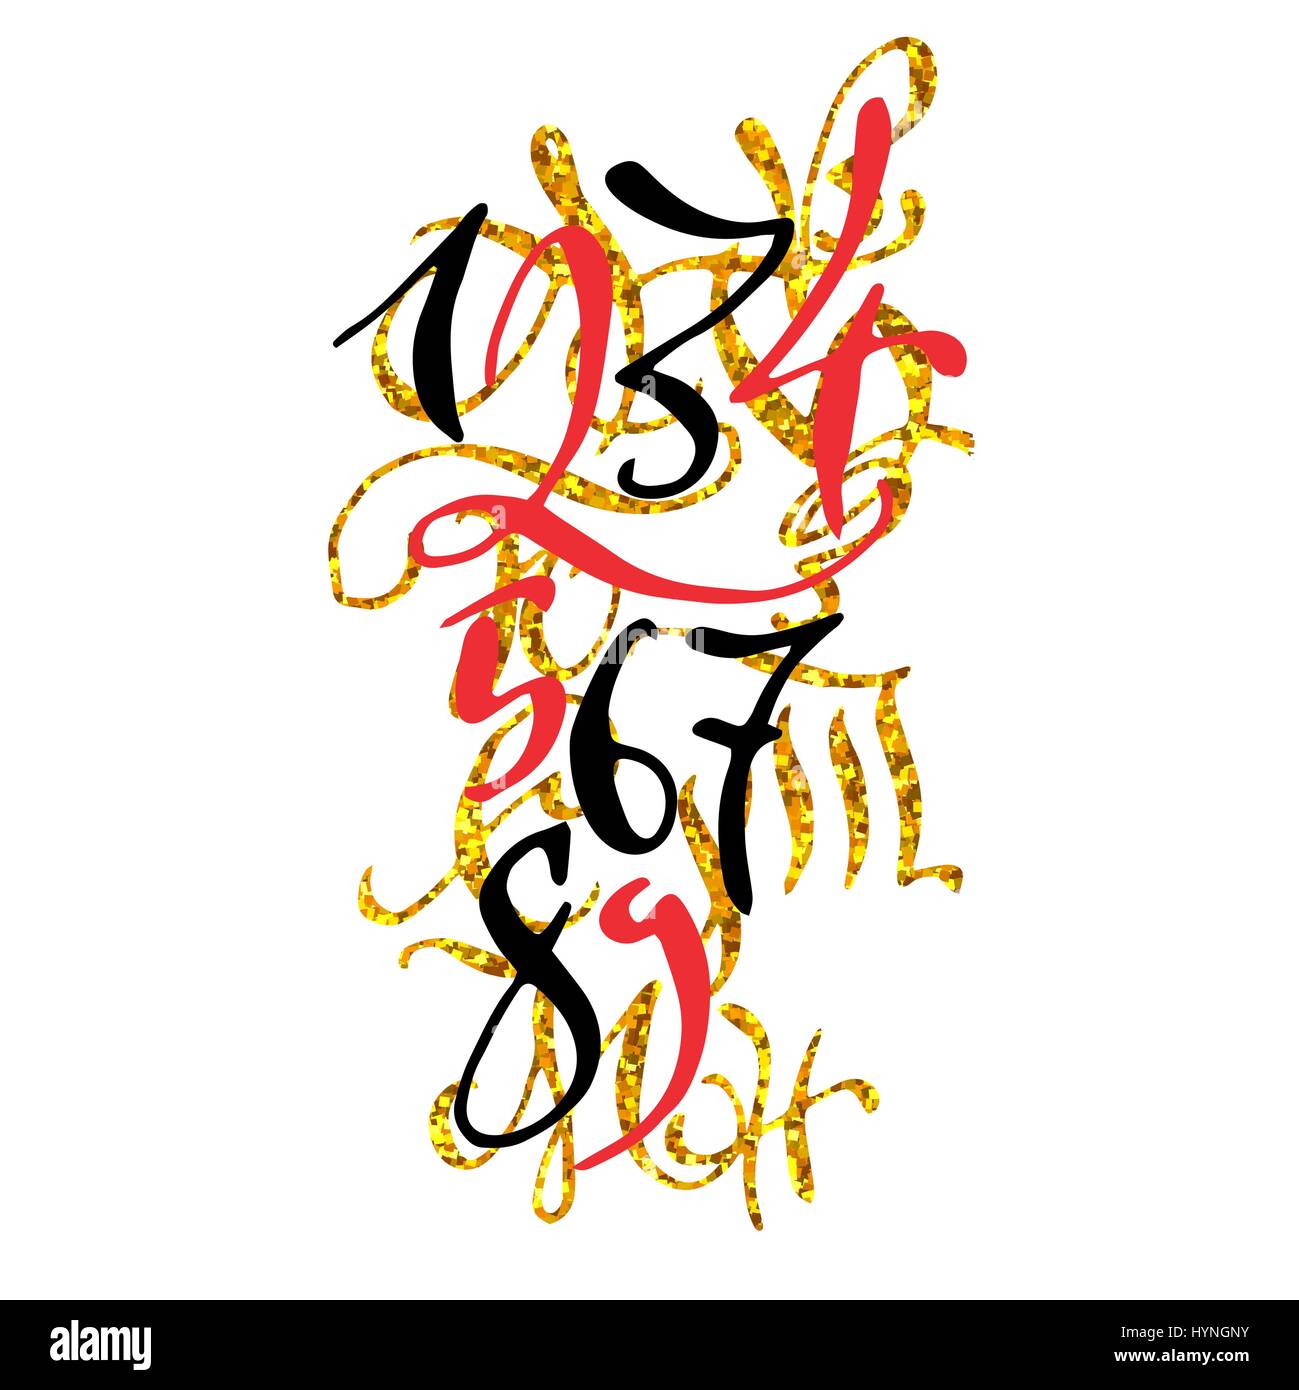 Golden disegnati a mano di alta qualità calligraphy poster con i numeri. Illustrazione Vettoriale